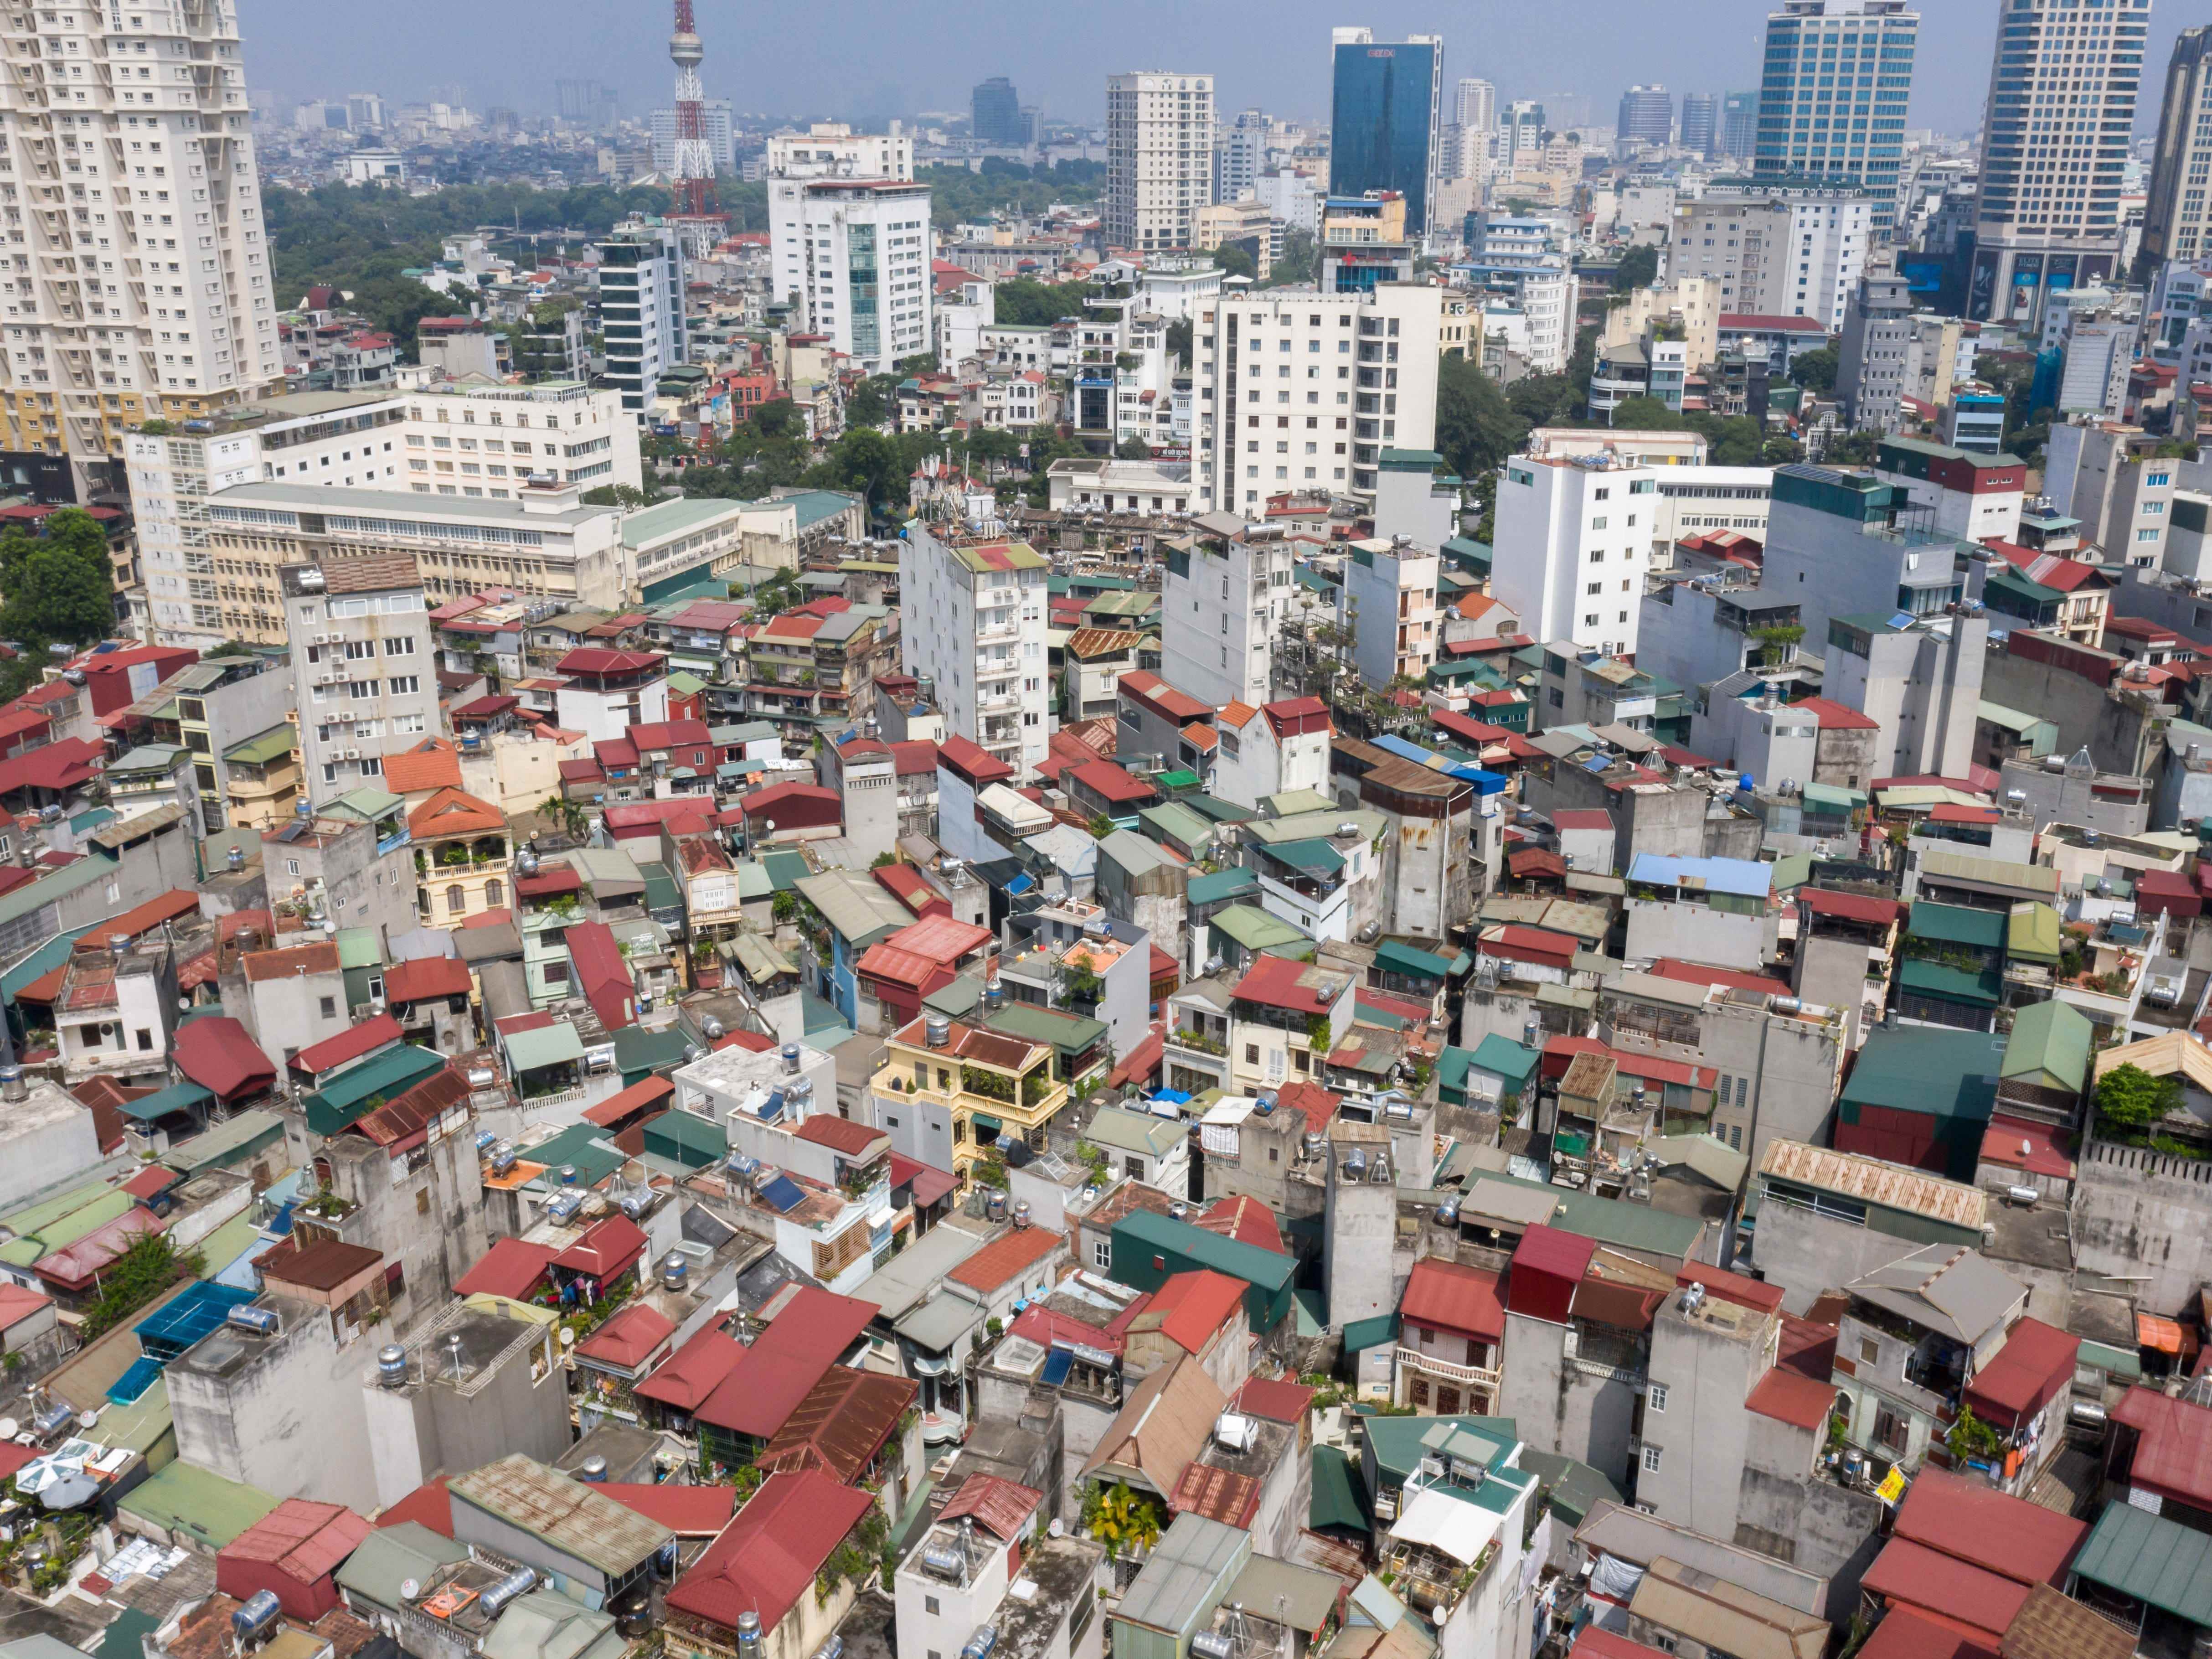 Luftaufnahme von Hanoi, Vietnam, zeigt die dichte Bevölkerung der Stadt